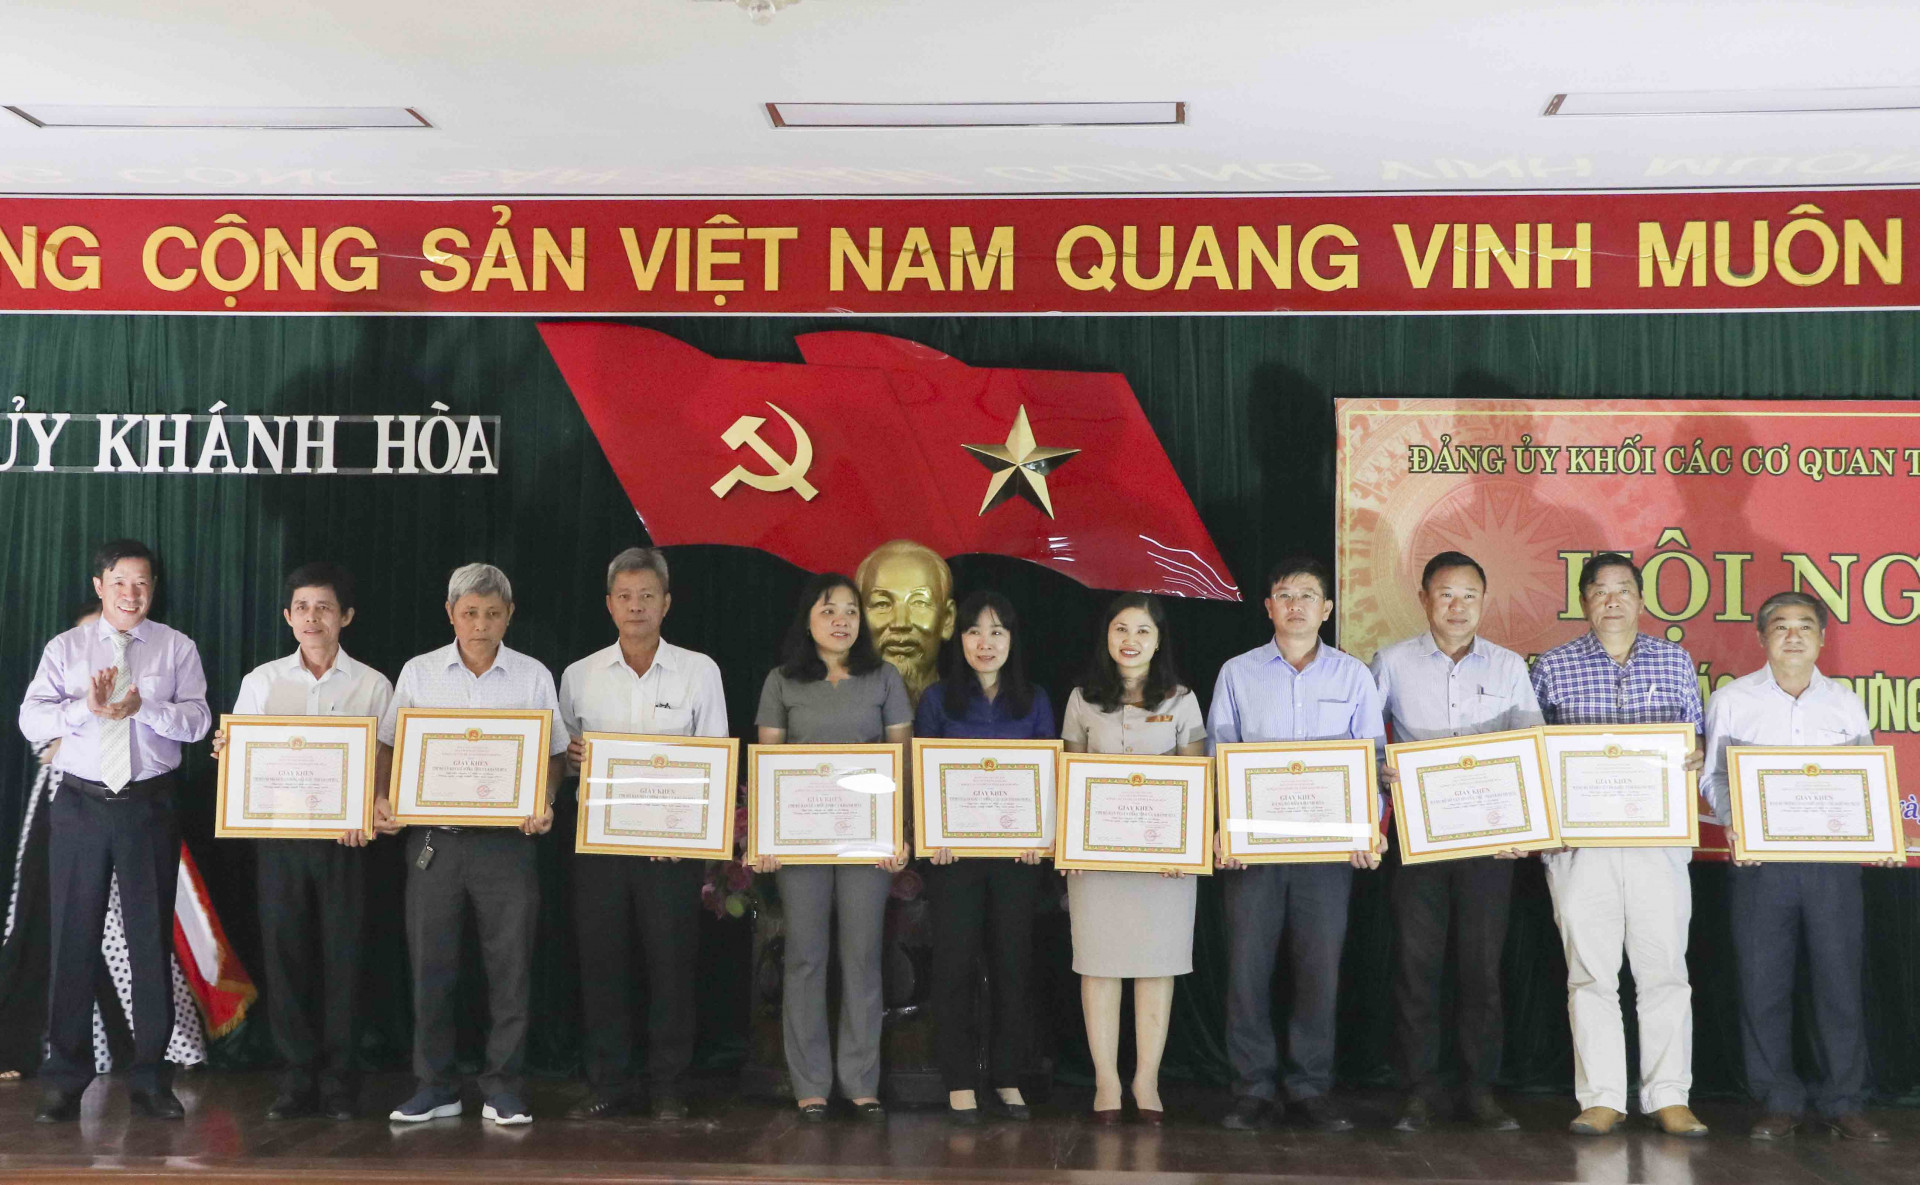 Ông Lương Kiên Định - Bí thư Đảng ủy Khối Các cơ quan tỉnh (bìa trái) trao giấy khen cho các tổ chức cơ sở Đảng xuất sắc